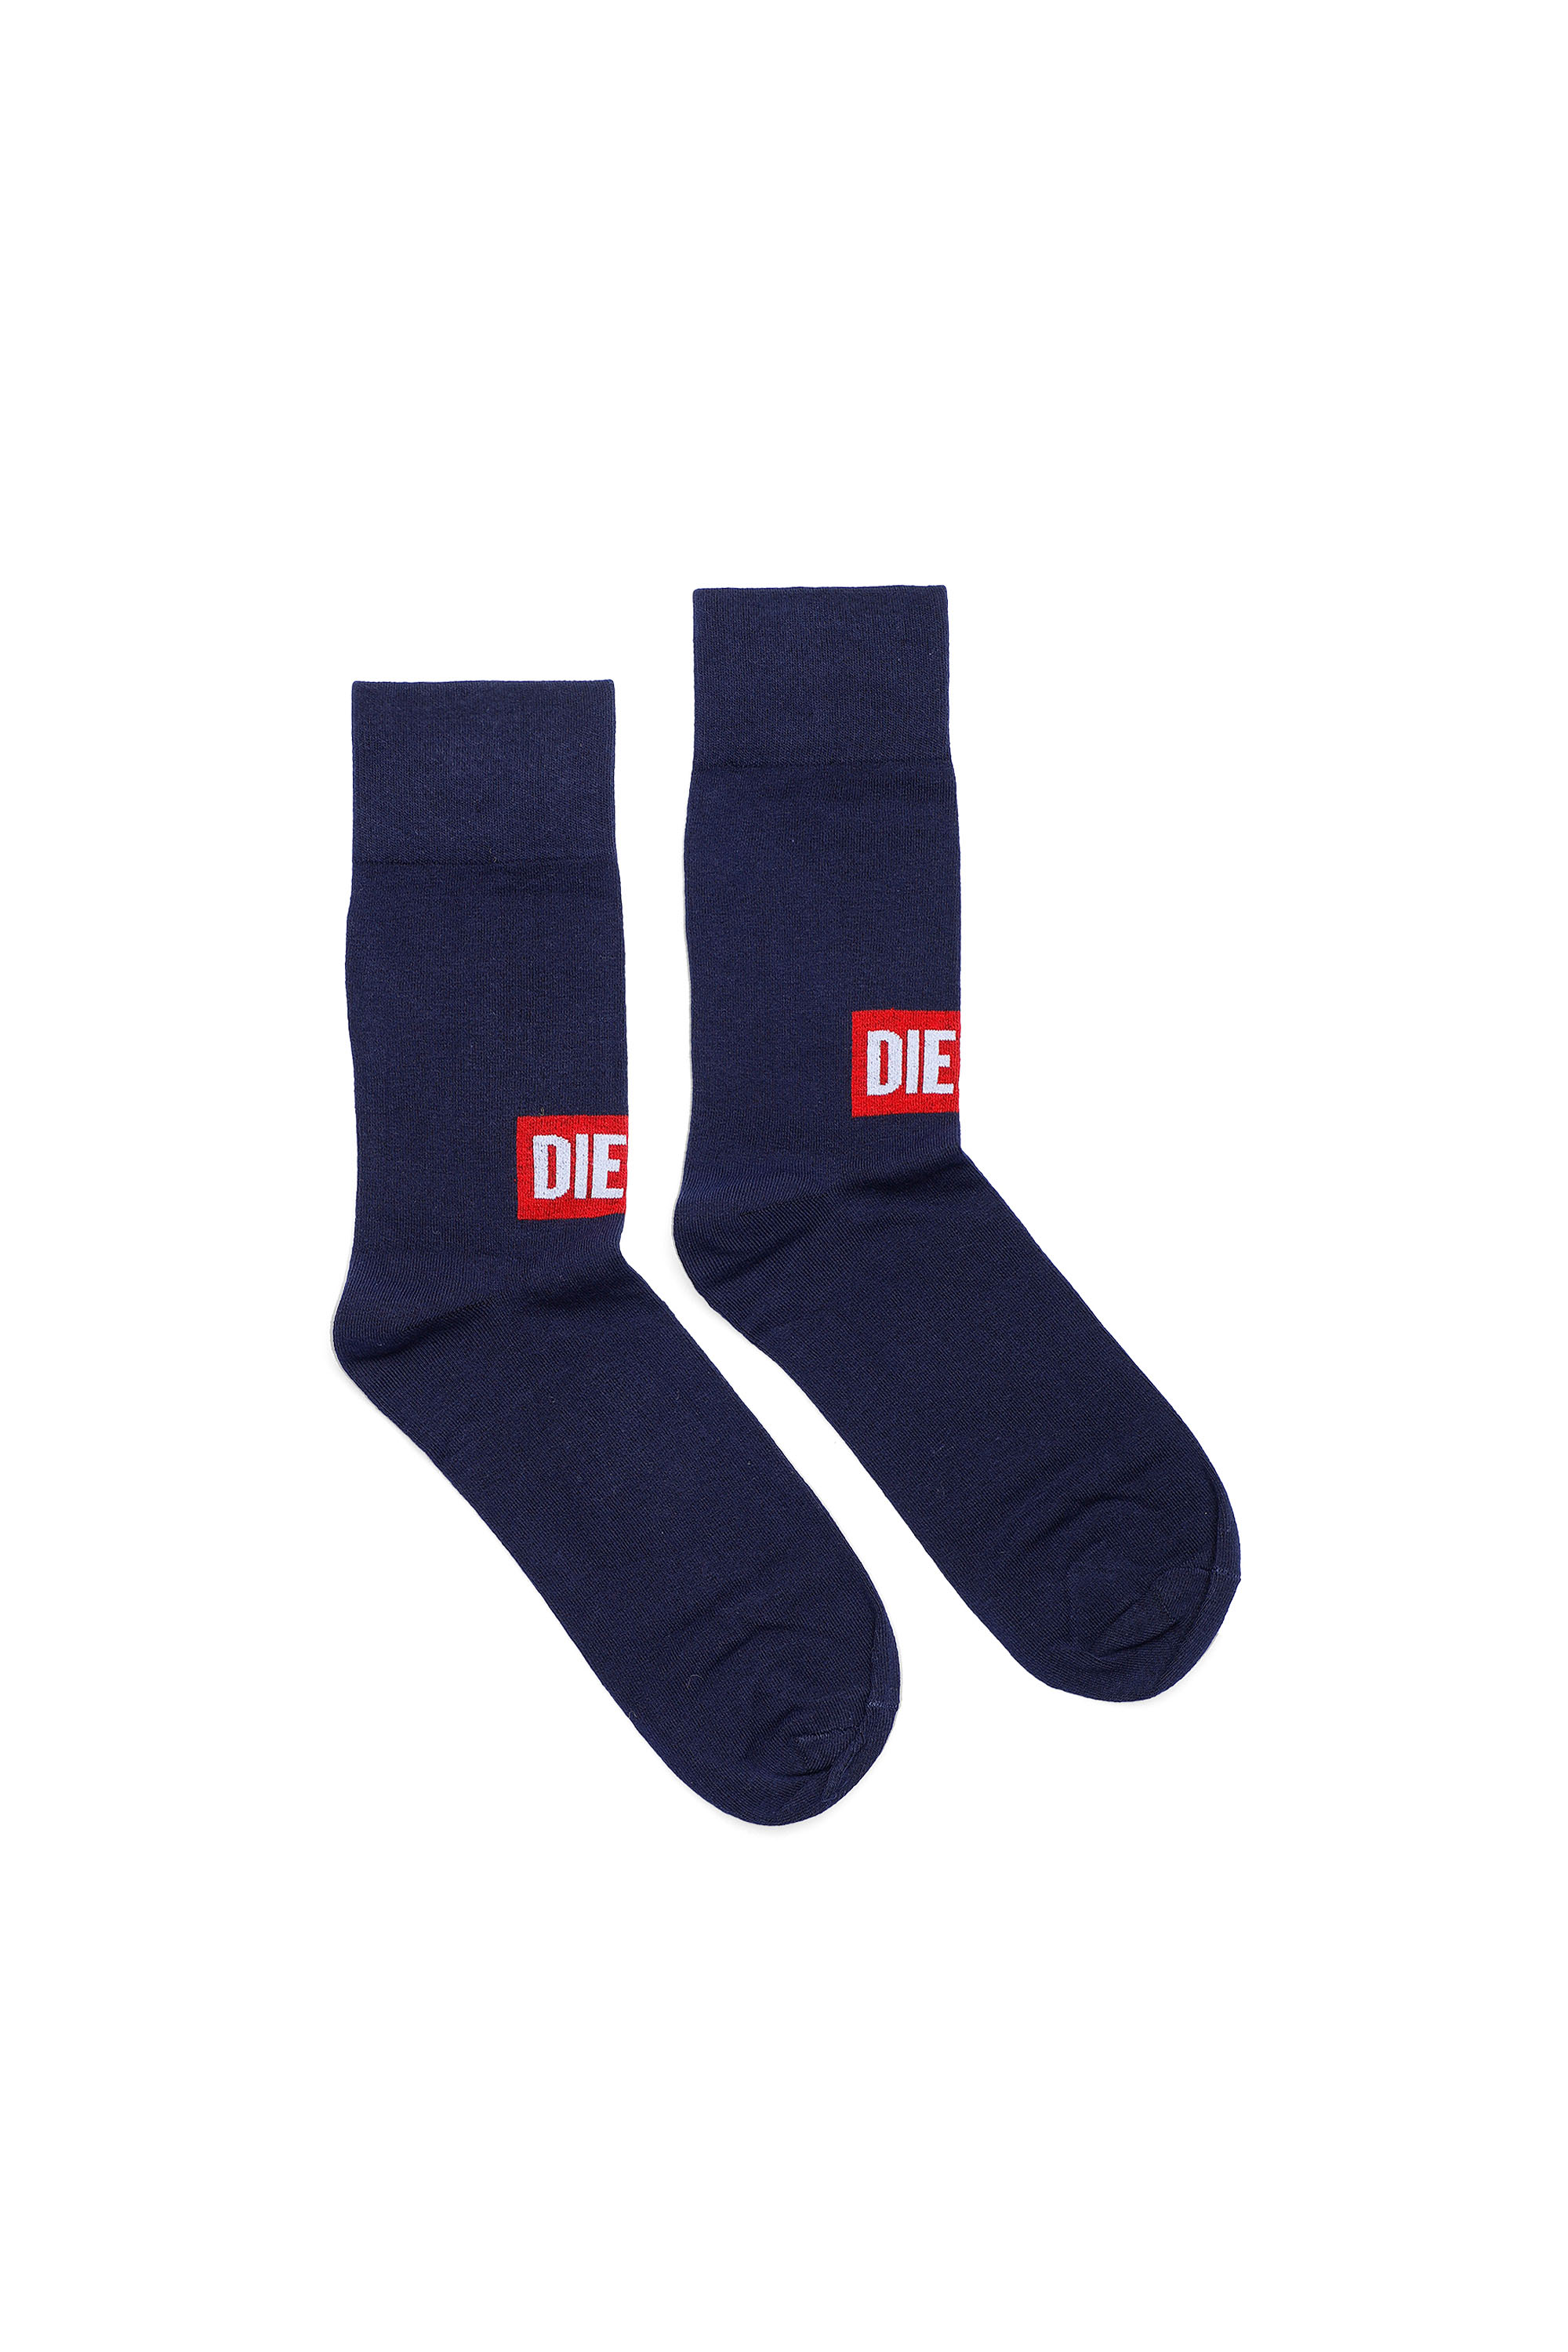 Diesel - Socken mit Diesel-Logo vorn - Strümpfe - Herren - Blau